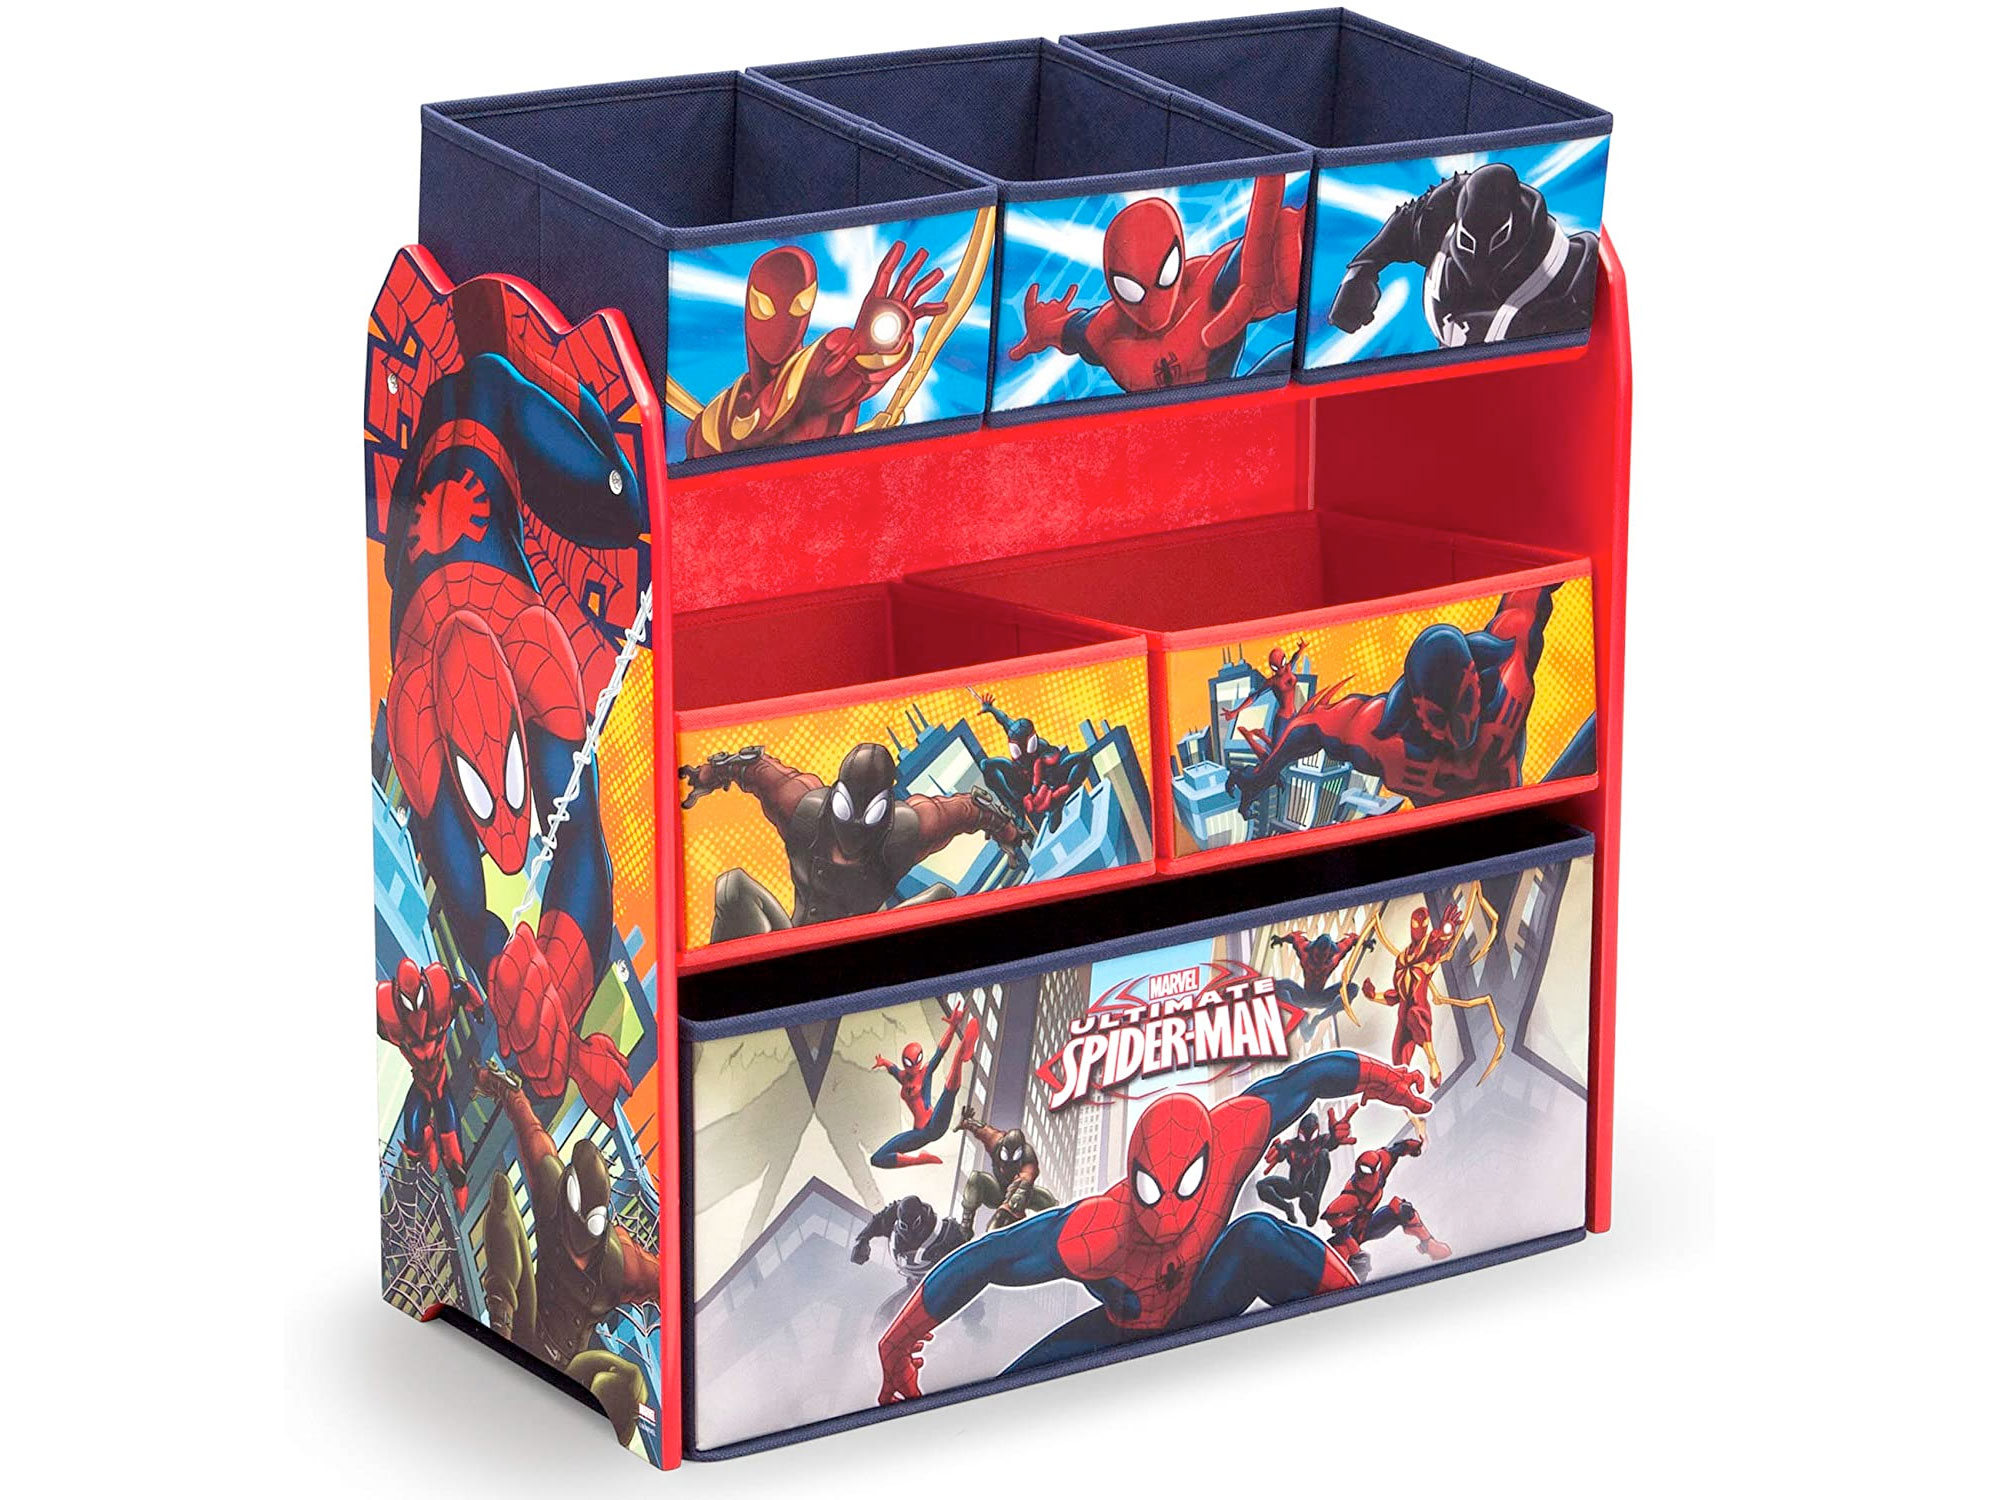 Amazon：Spider-Man 6-Bin Toy Storage Organizer只卖$37.97